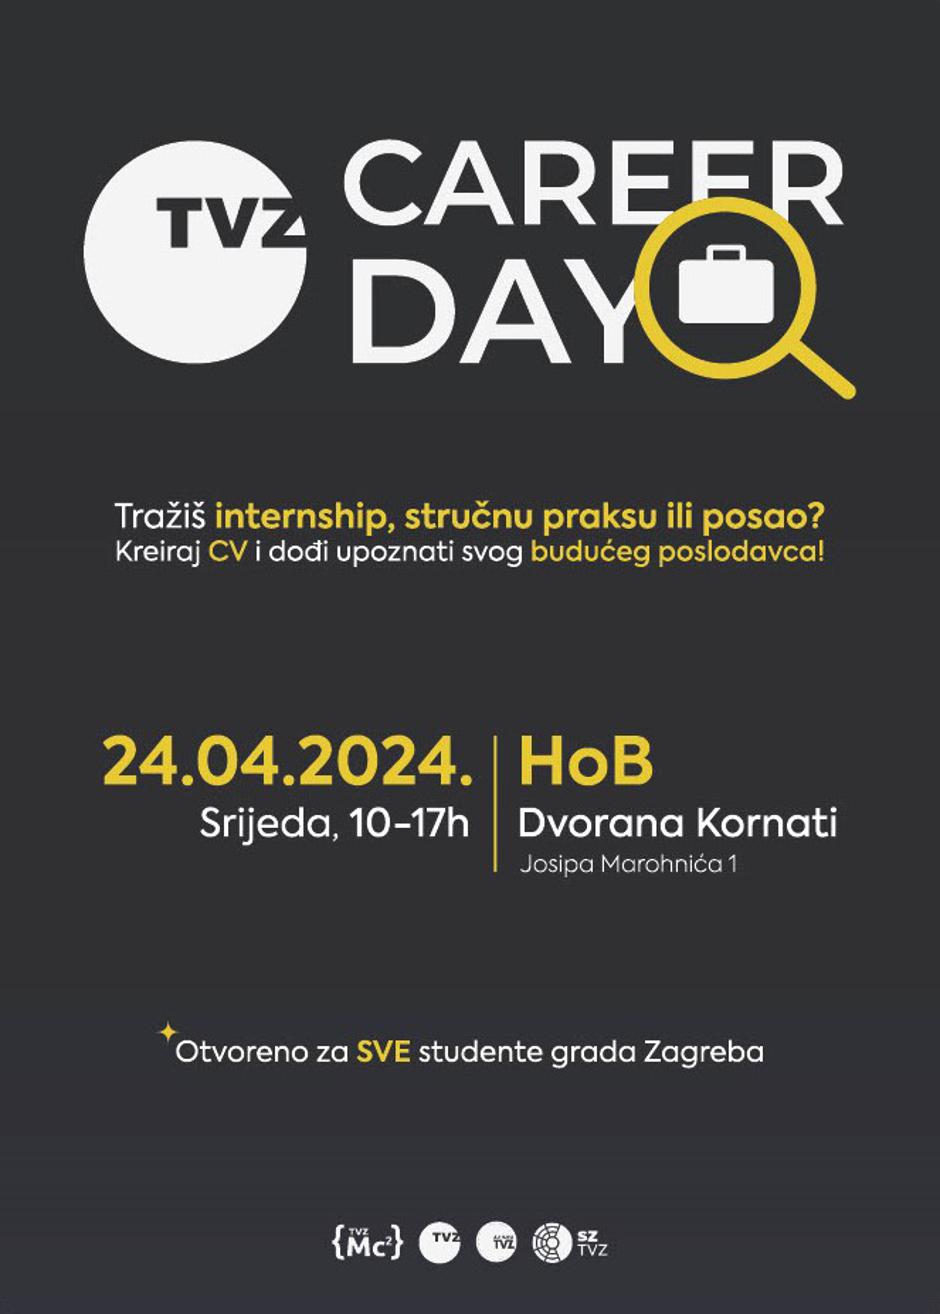 TVZ Career Day